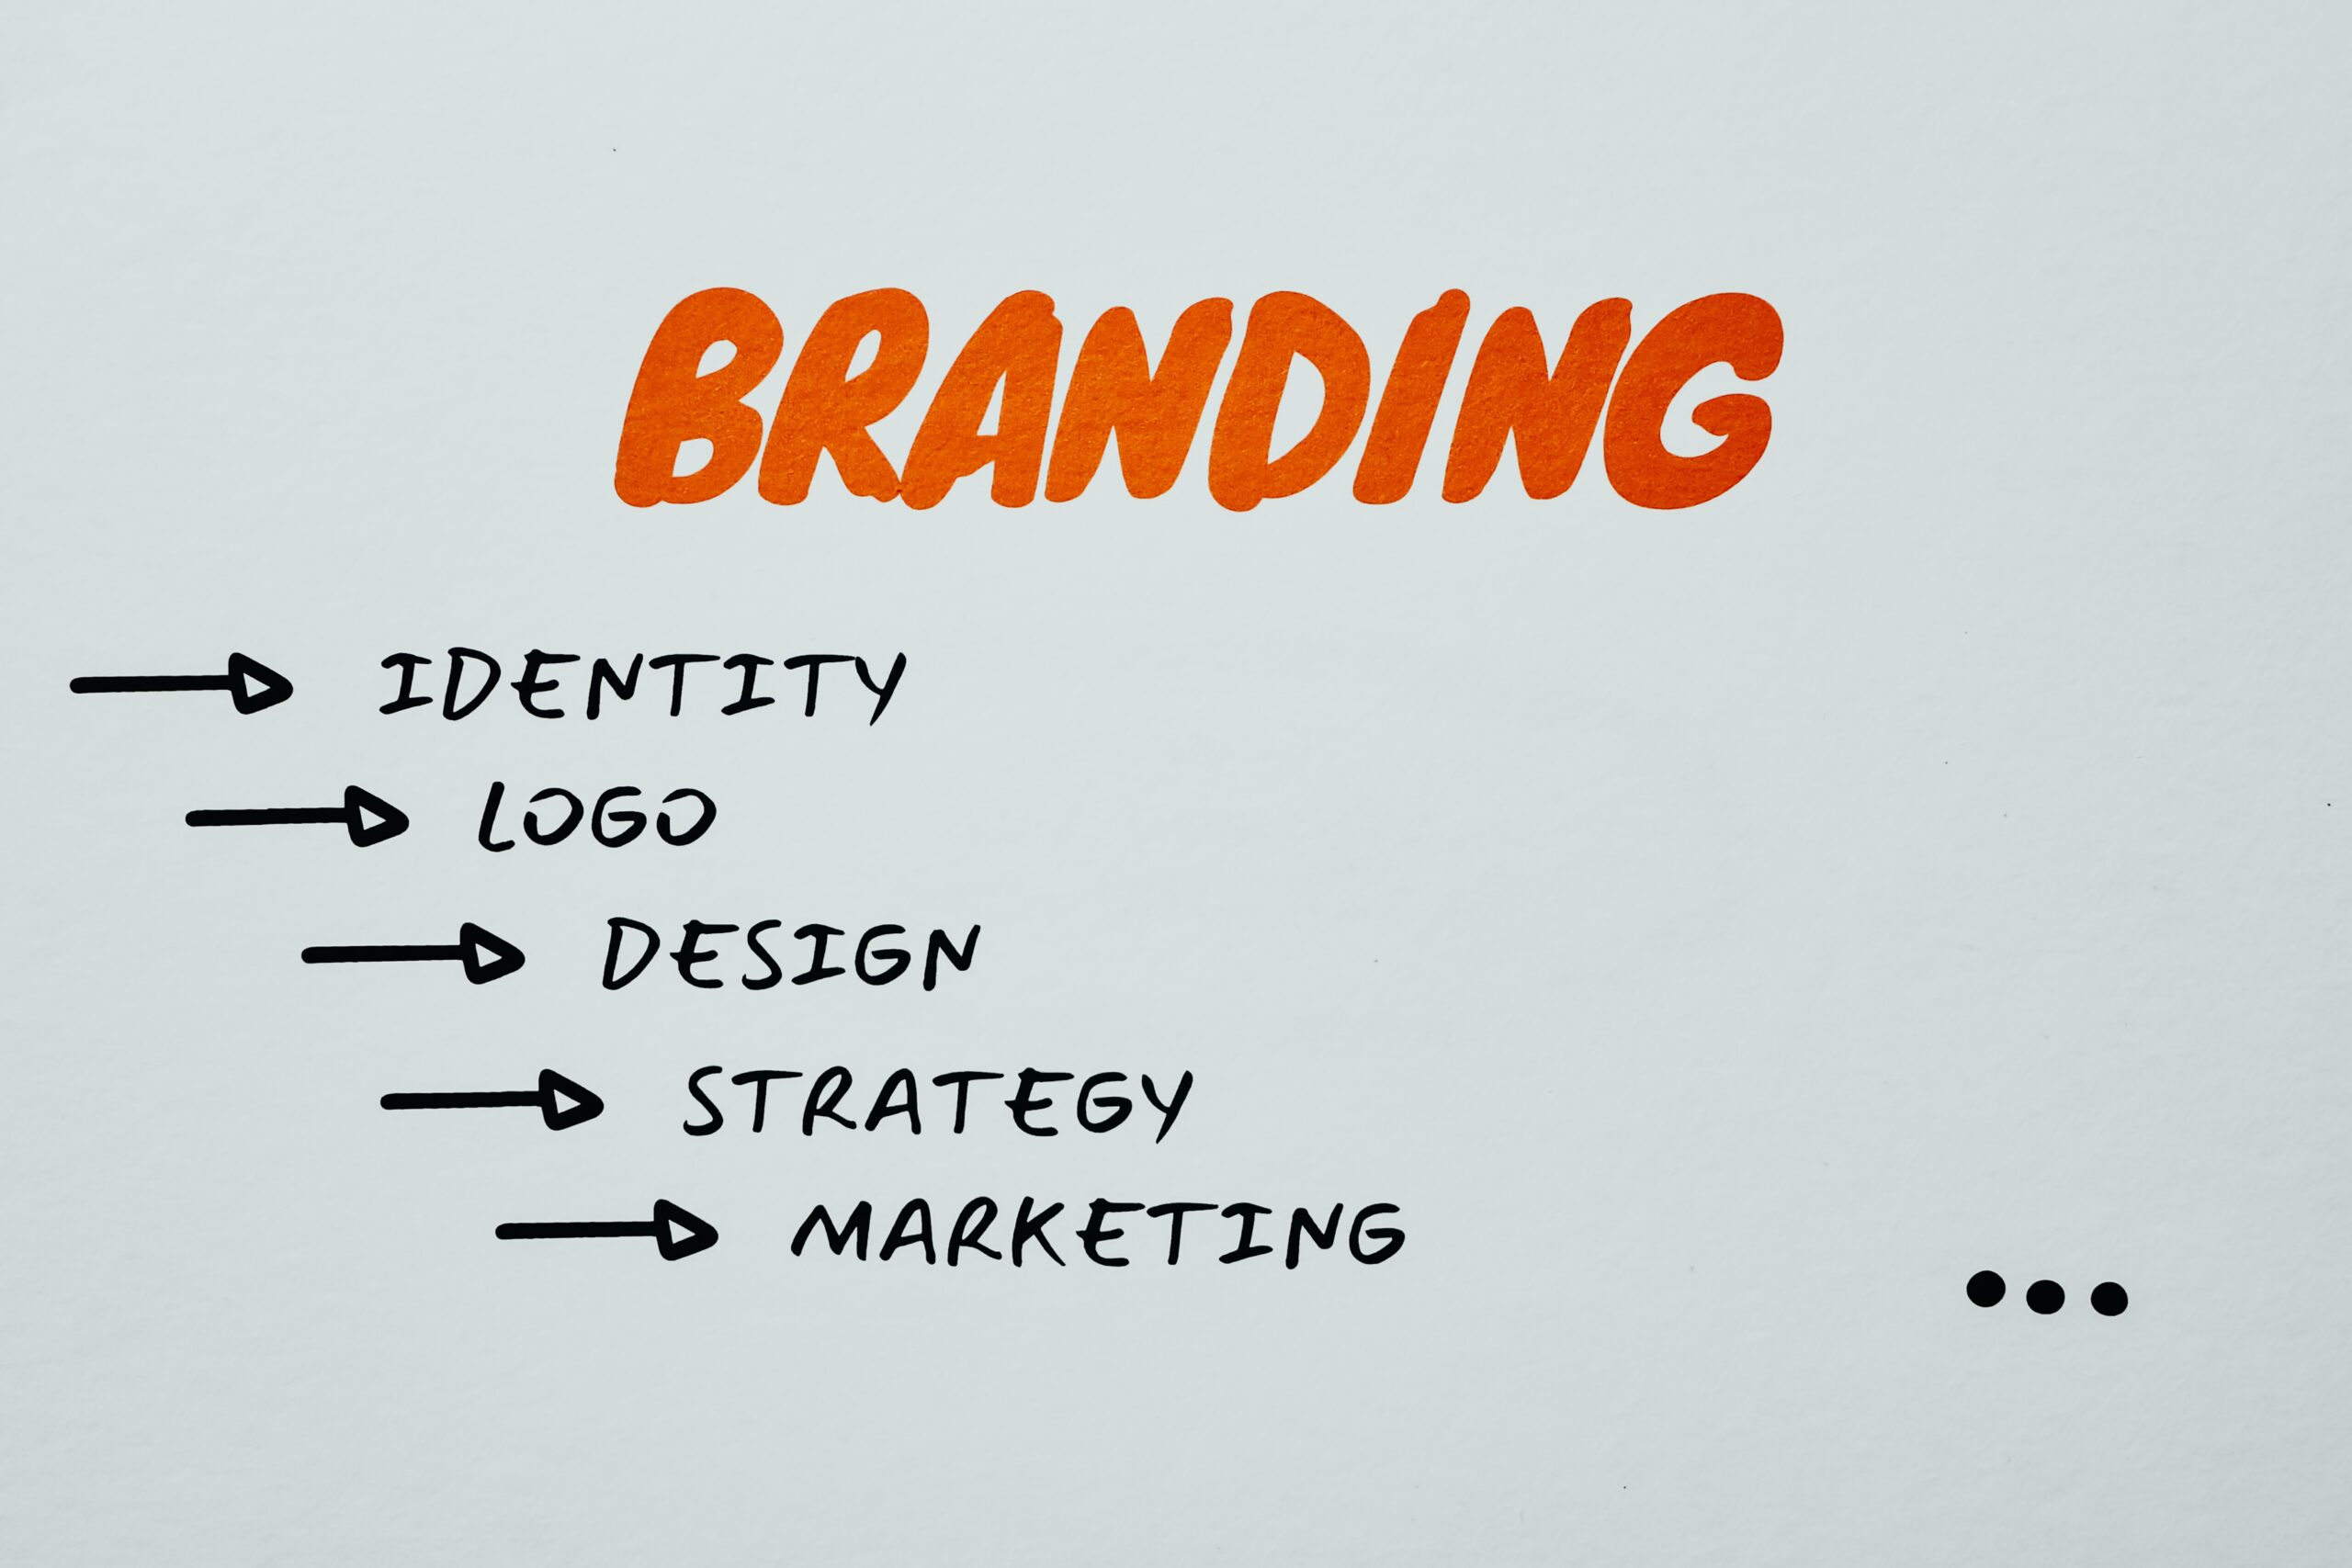 Simple Break Down of Branding